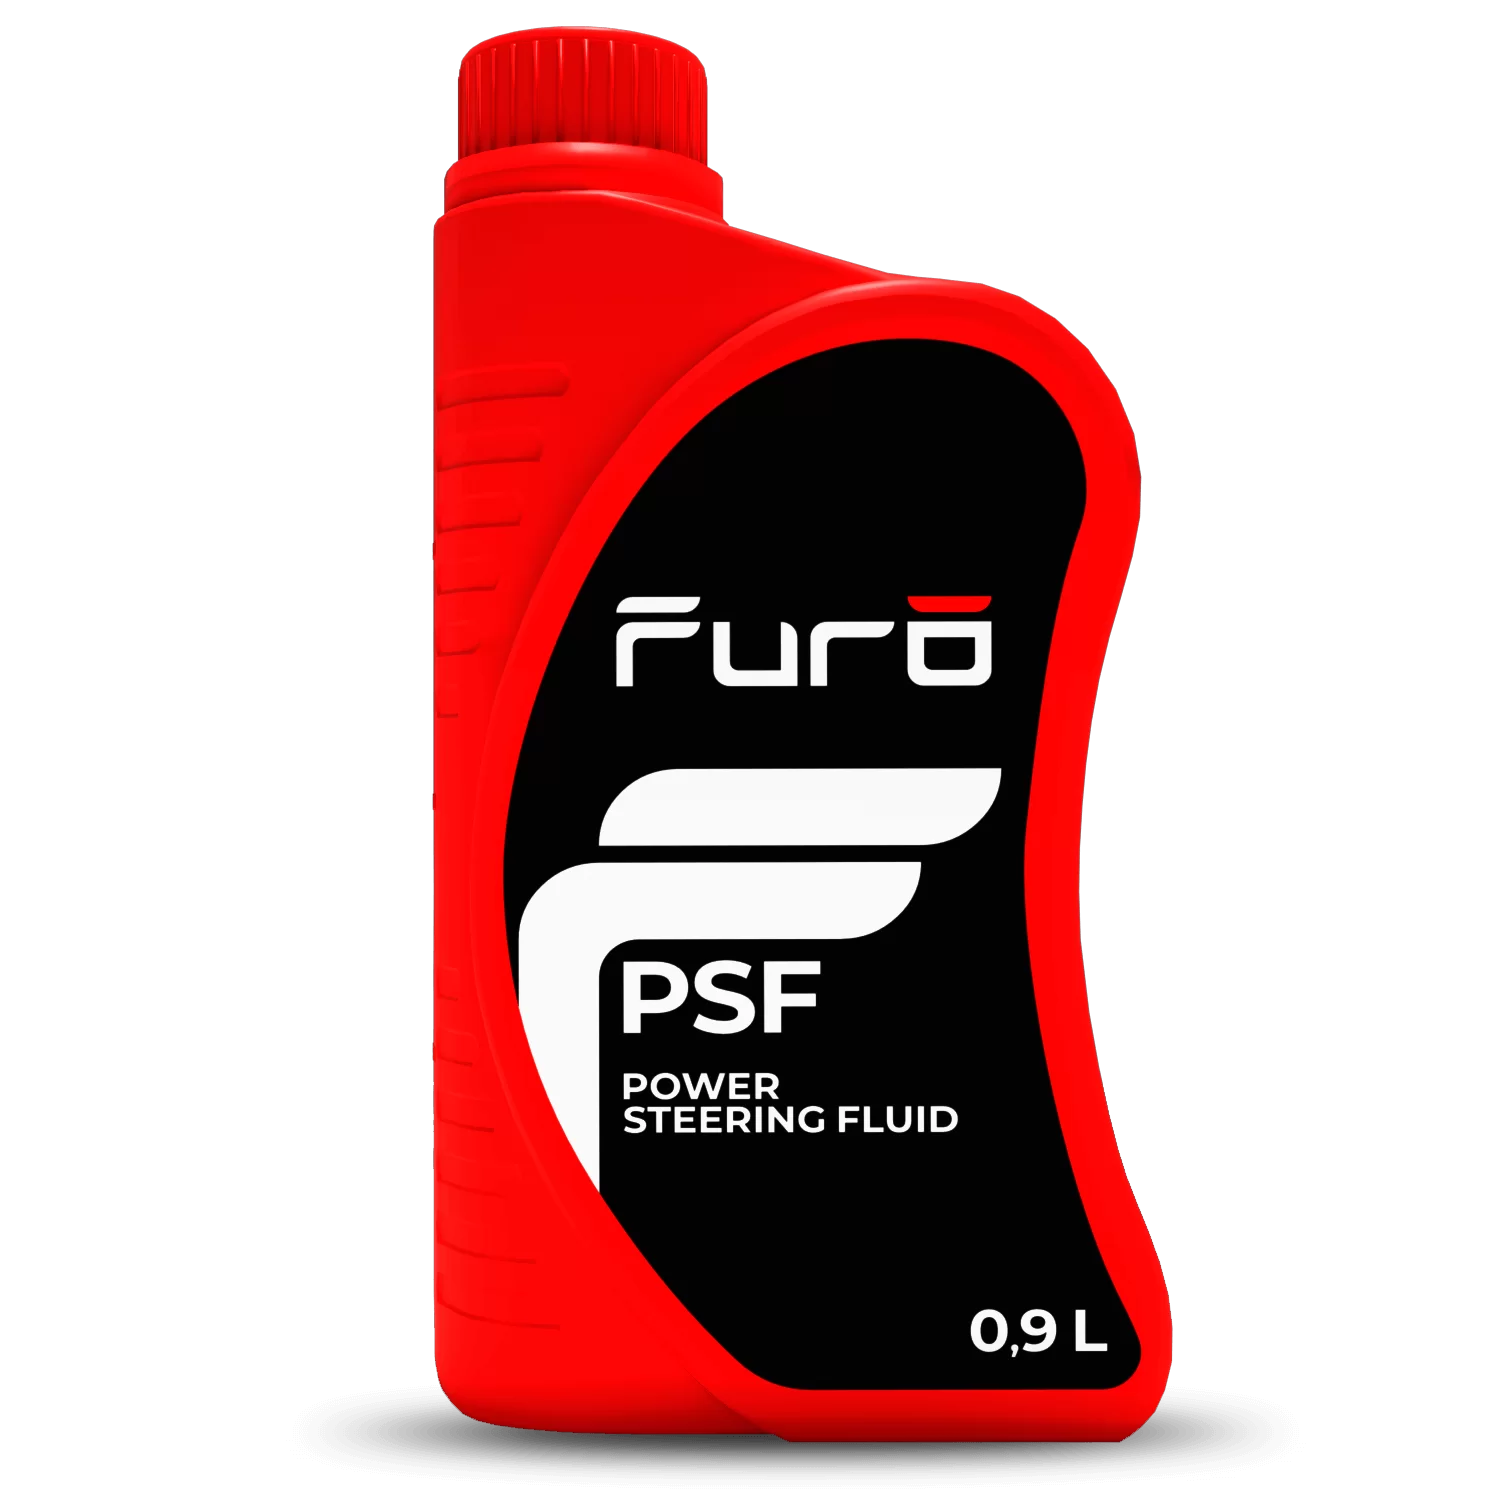 Гидравлическая жидкость - Furo PSF, 0.9л / FR002